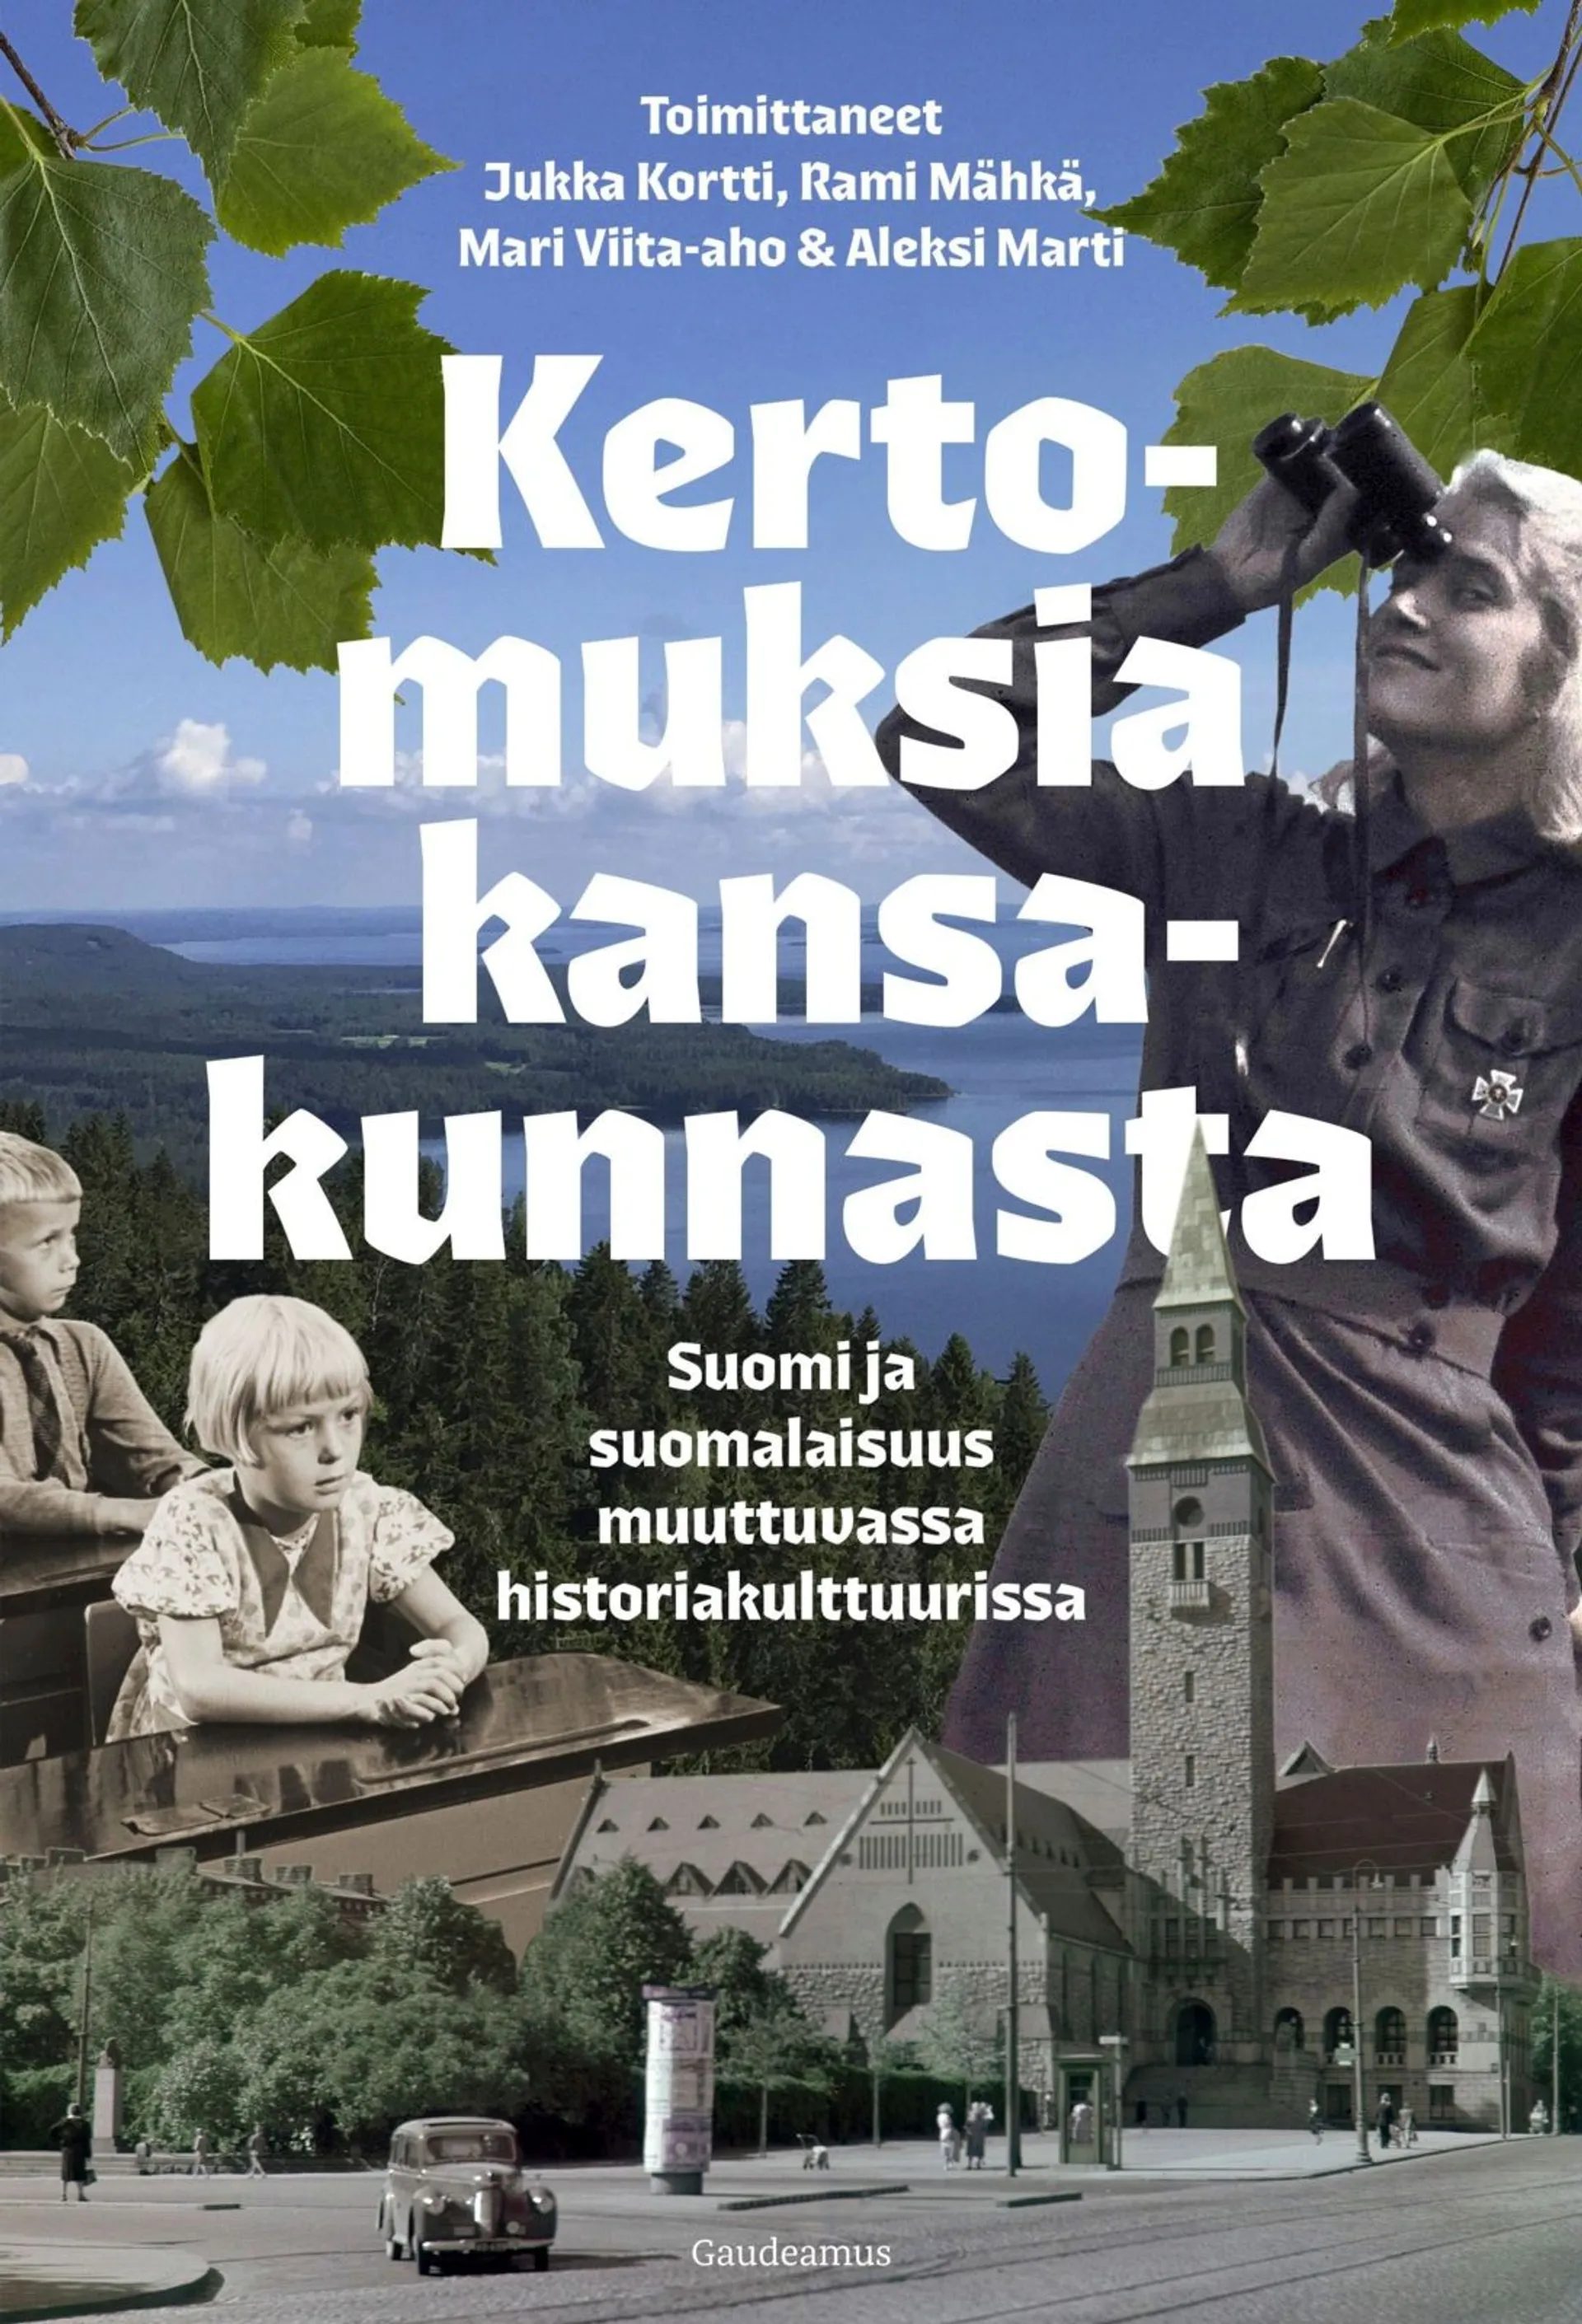 Kertomuksia kansakunnasta - Suomi ja suomalaisuus muuttuvassa historiakulttuurissa